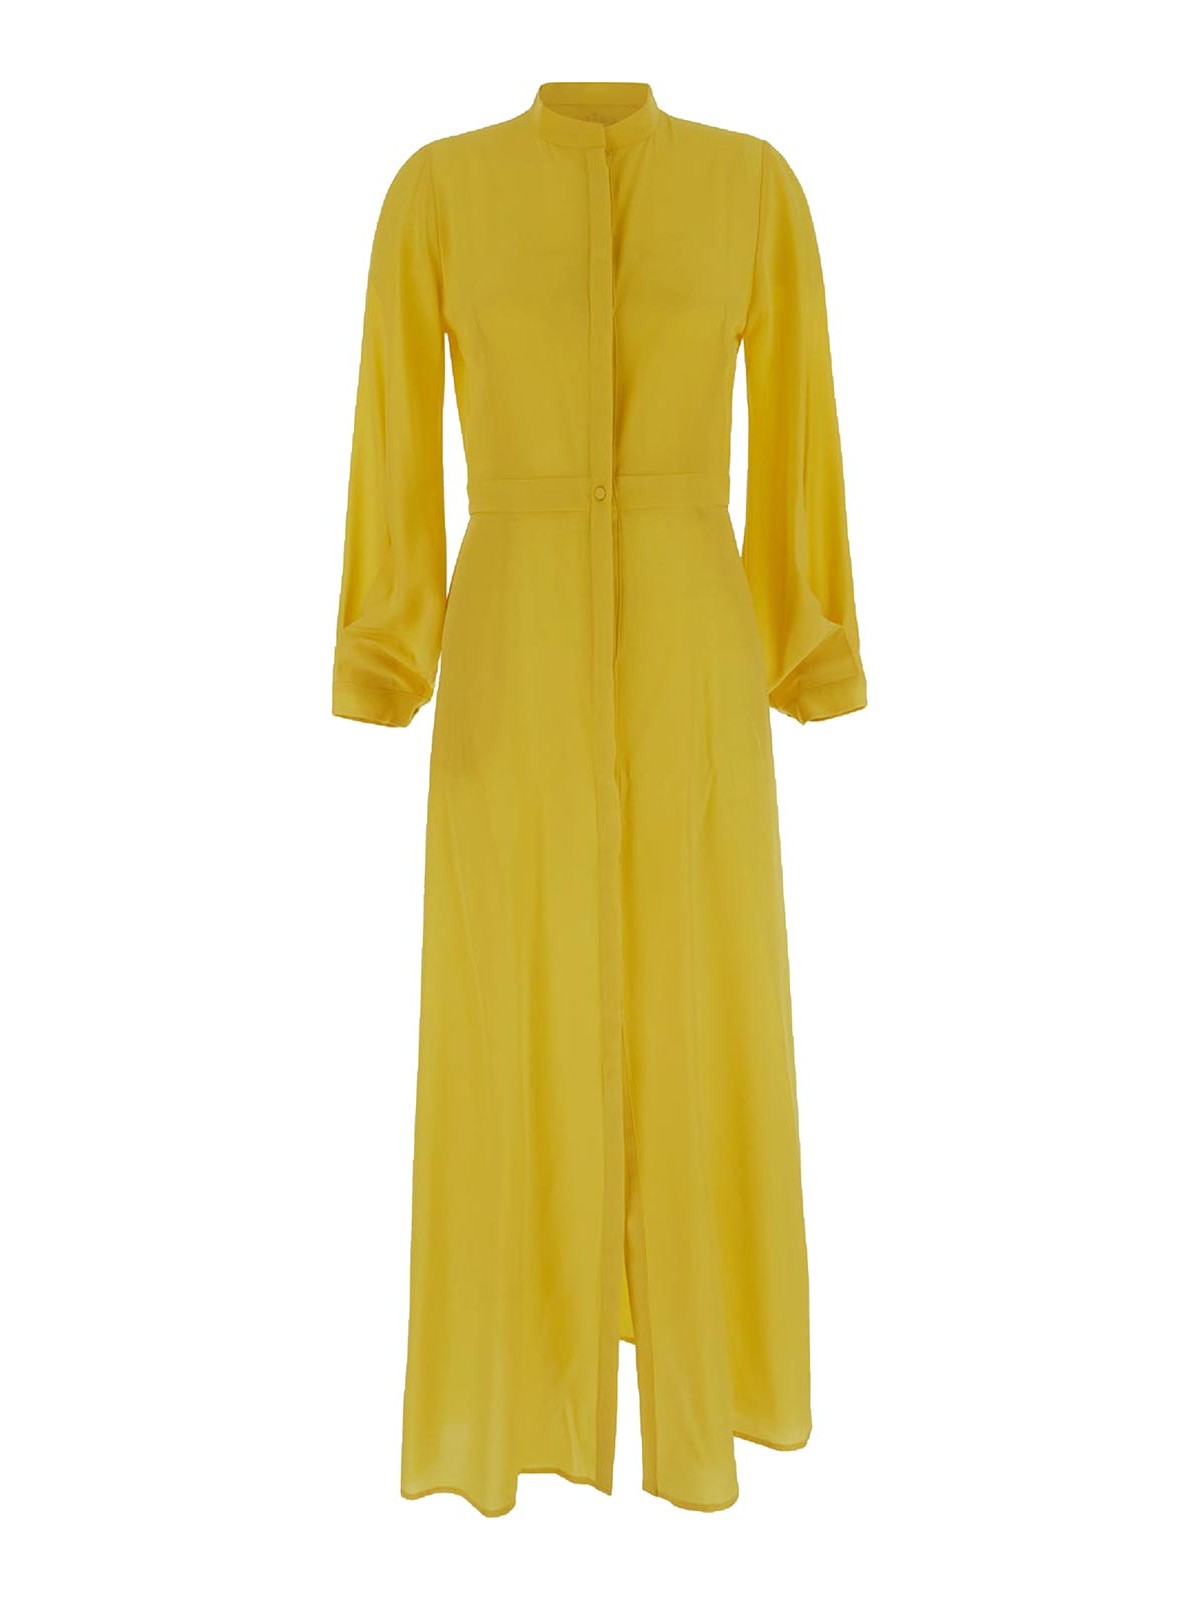 Cri.da Cento Long Dress In Yellow